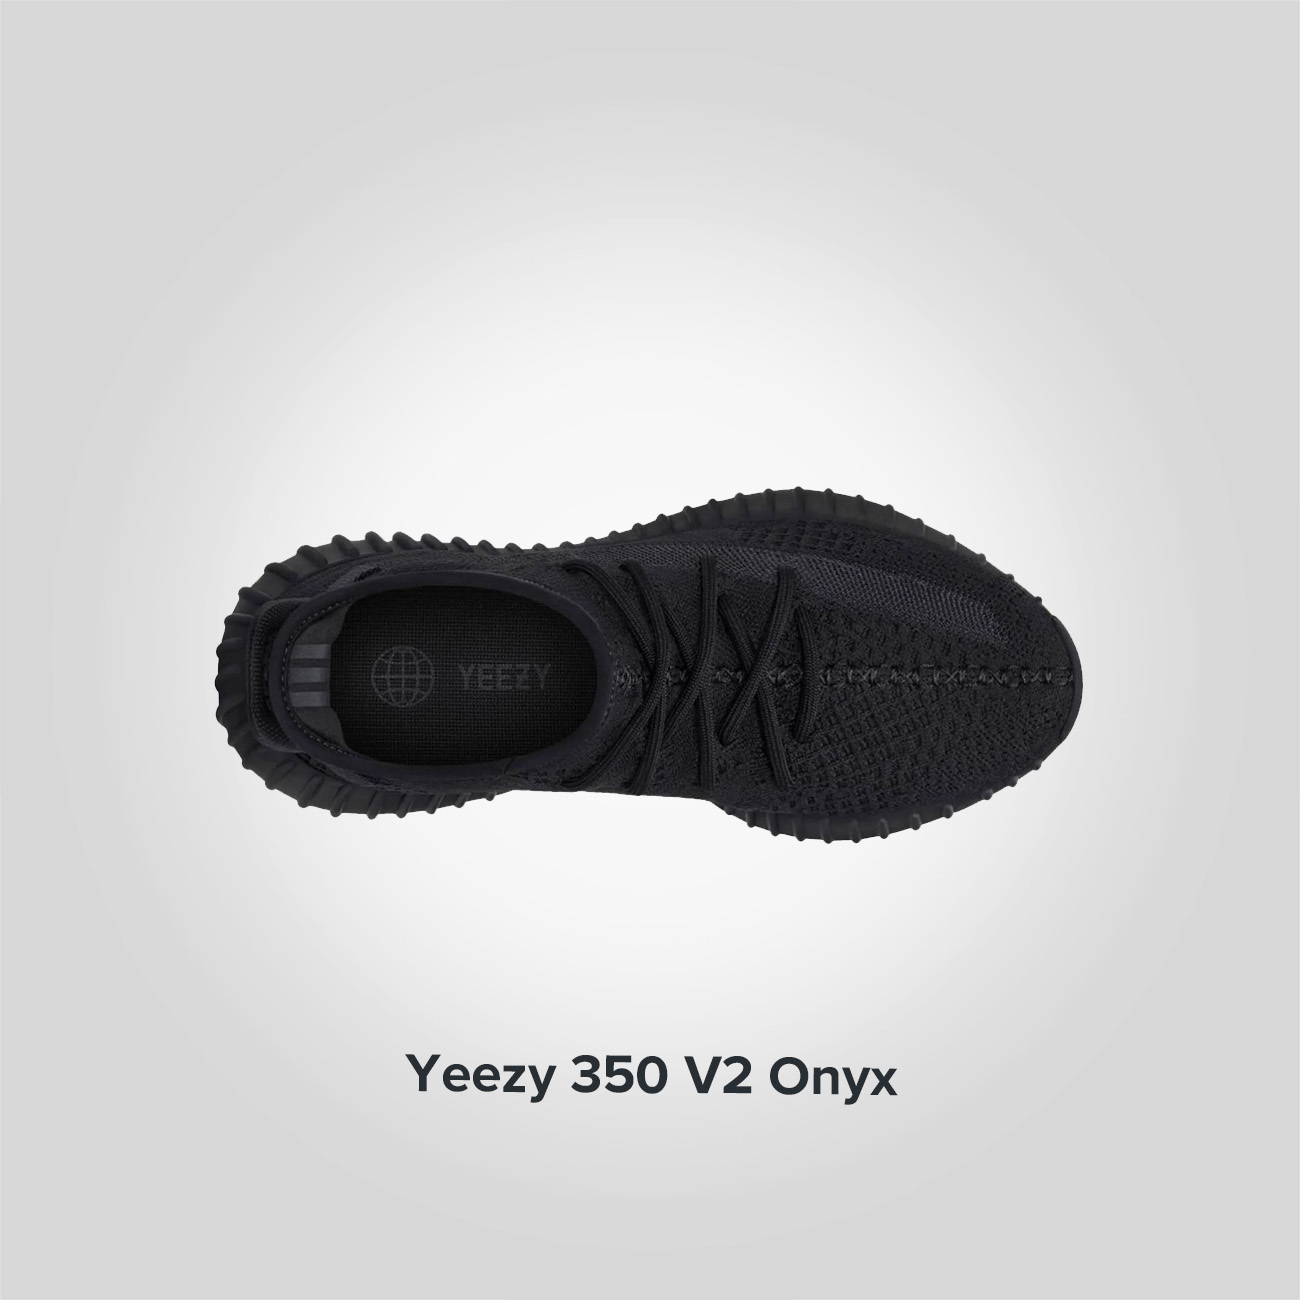 Yeezy Boost 350 V2 Onyx